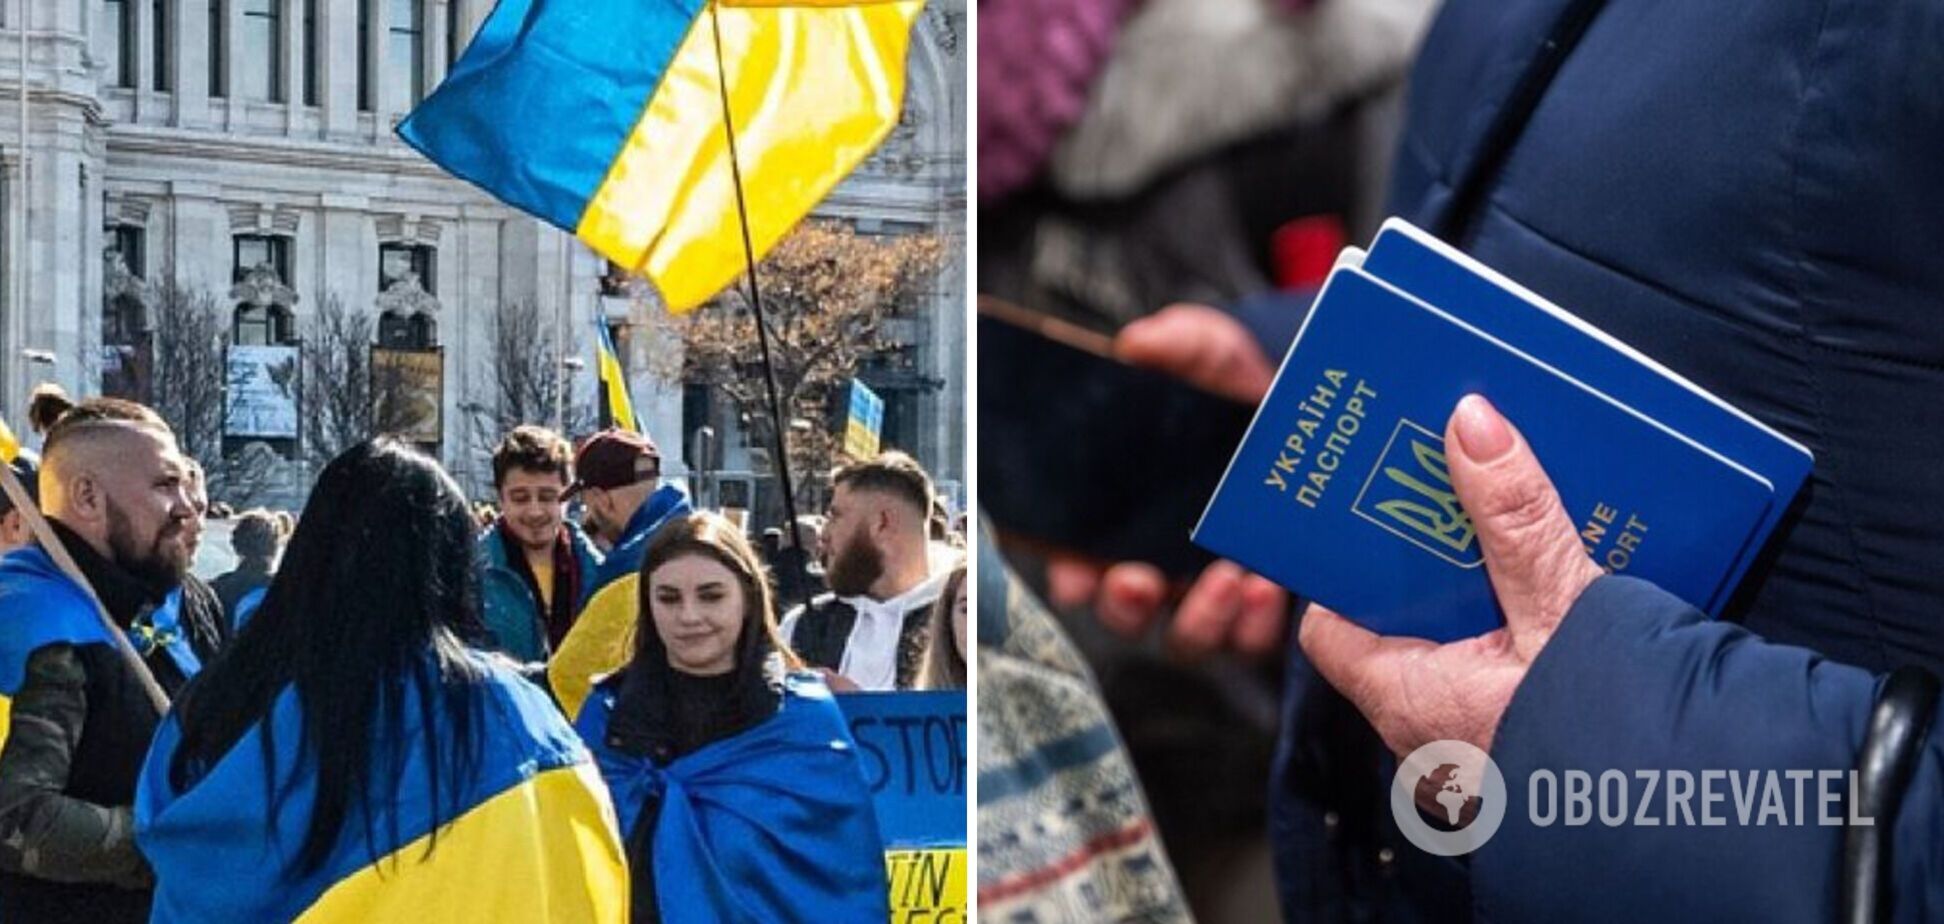 Скільки українців і куди виїхали від початку повномасштабної війни в Україні – дослідження